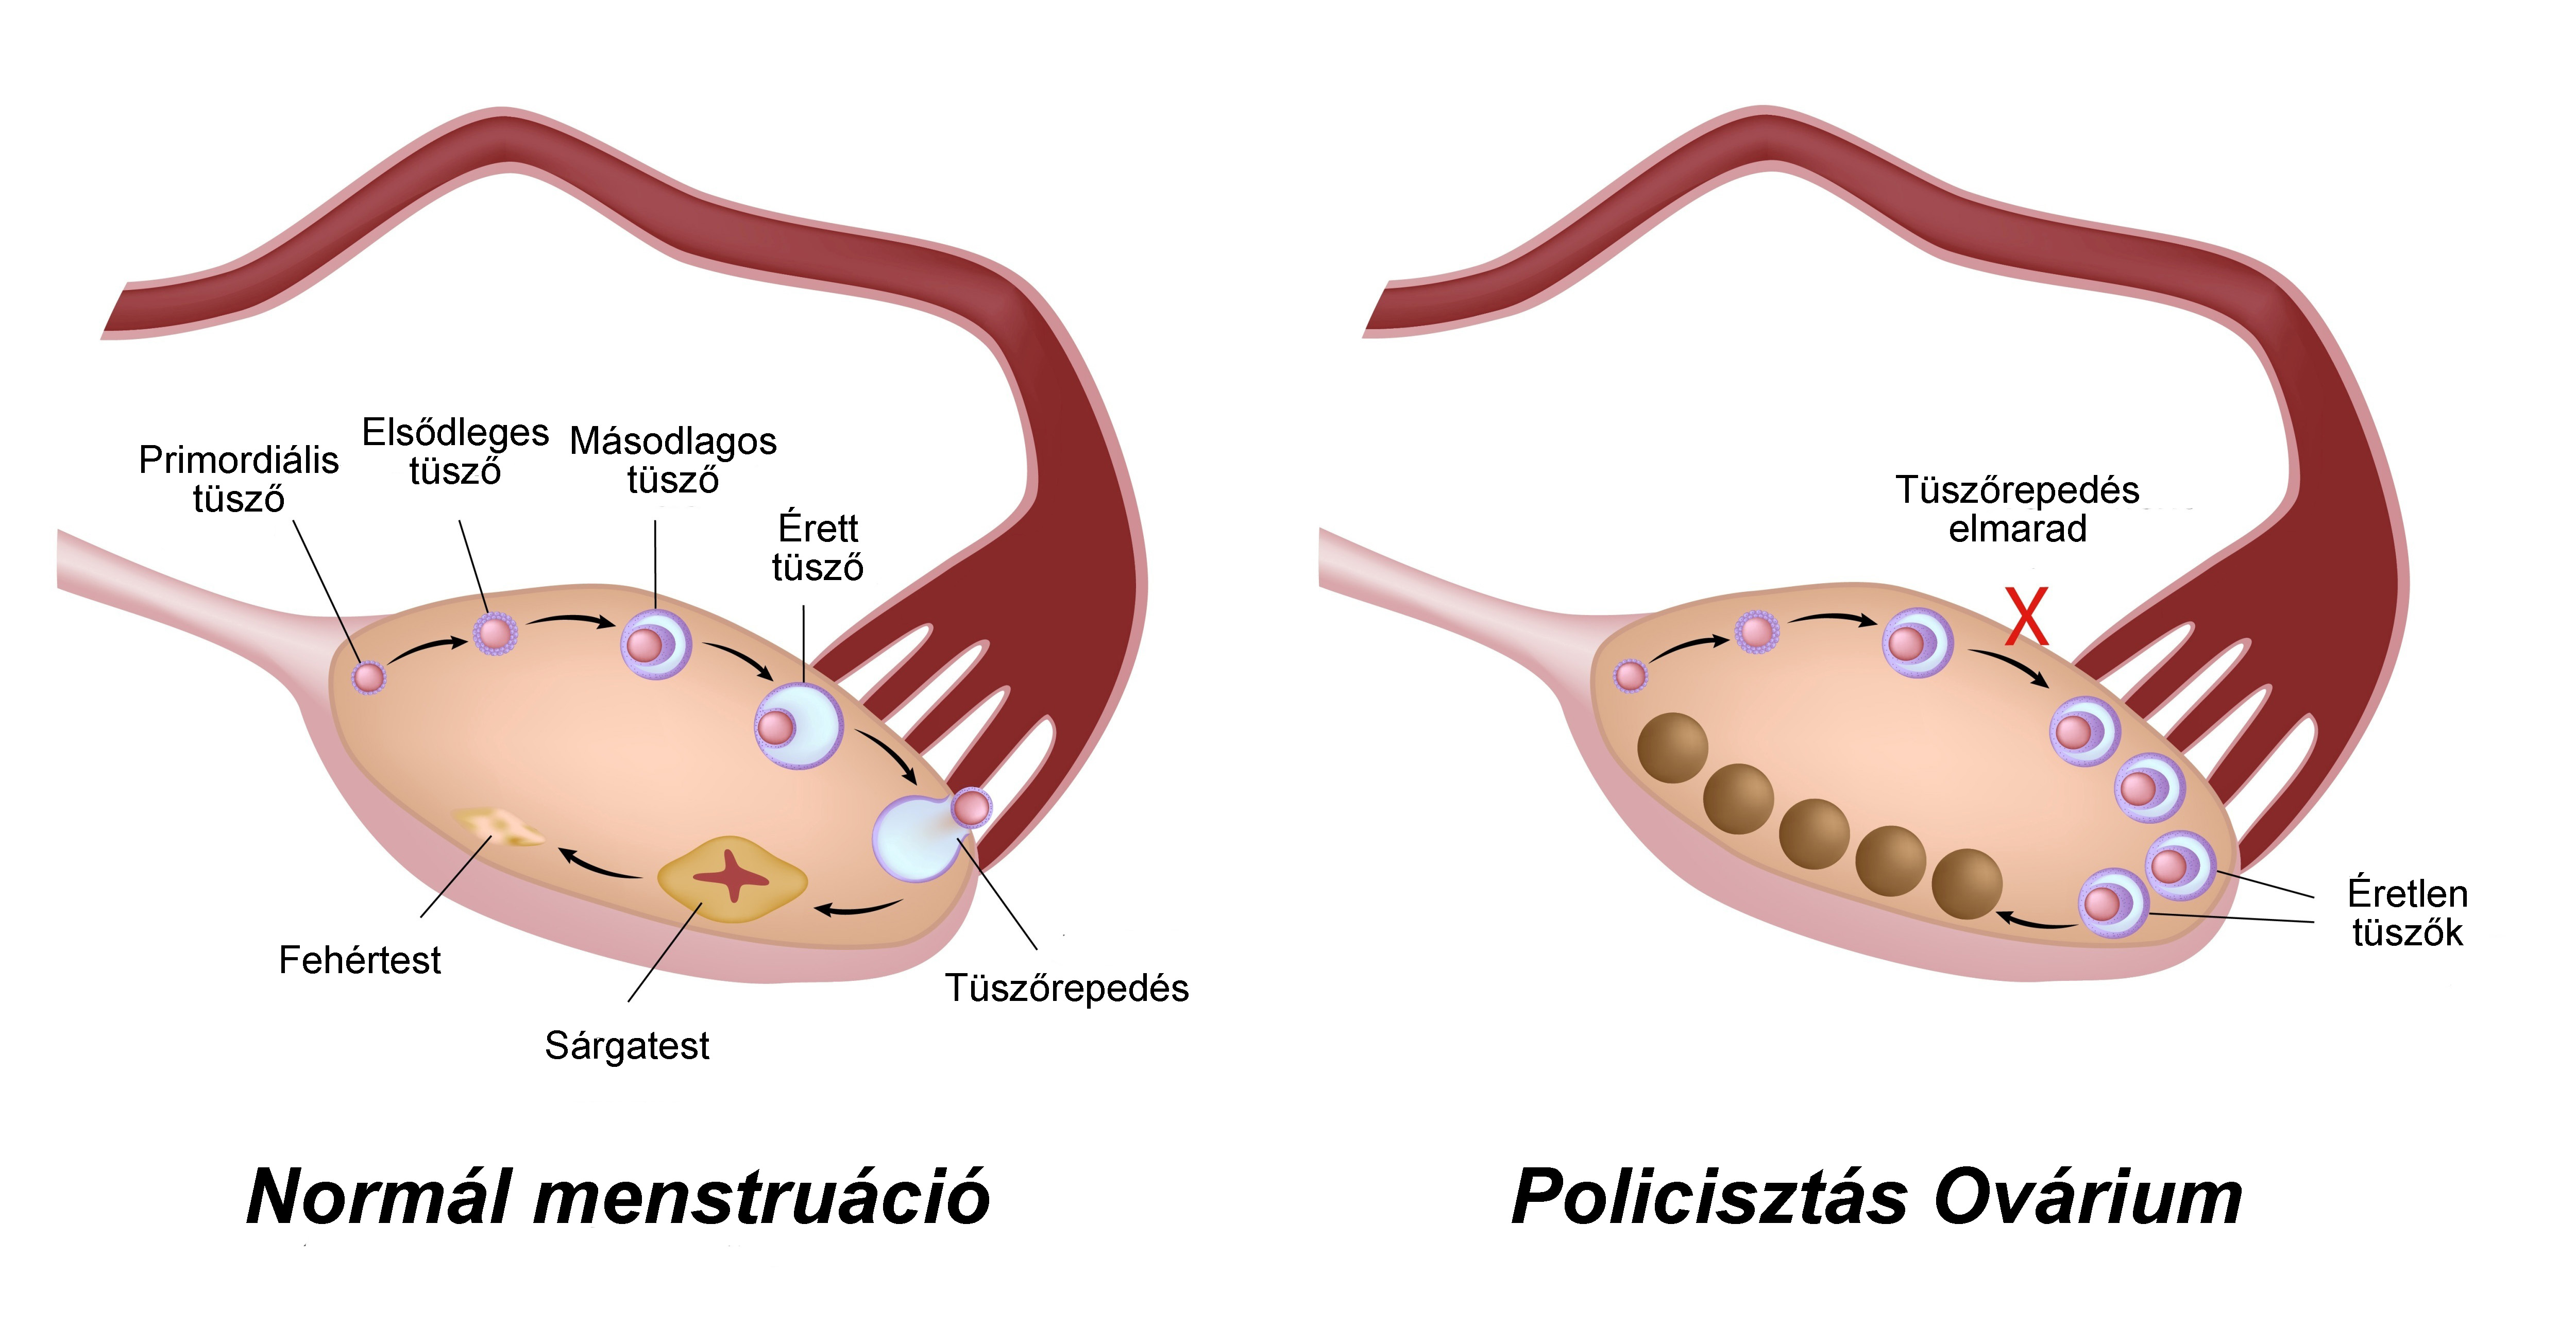 Ovarios poliquisticos tratamiento para embarazo